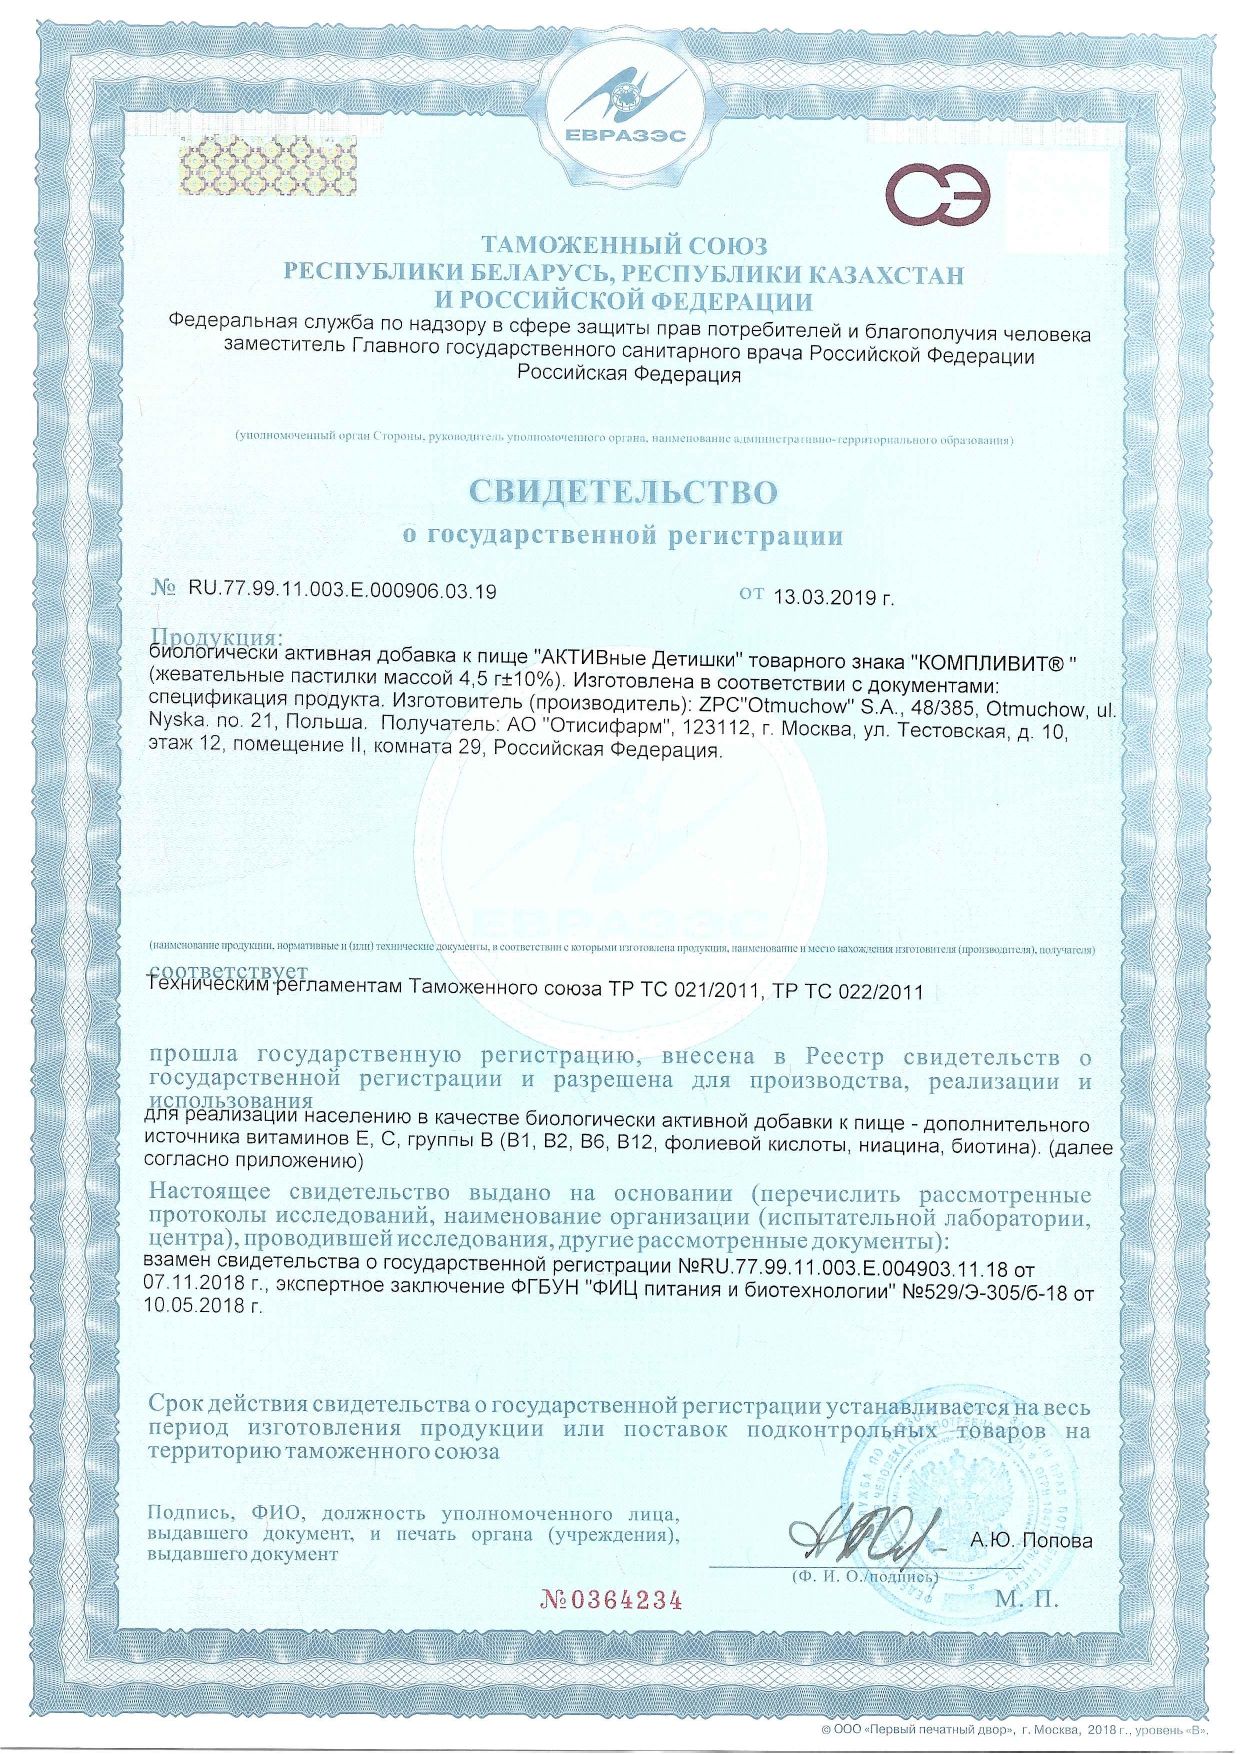 Компливит Активные Детишки сертификат